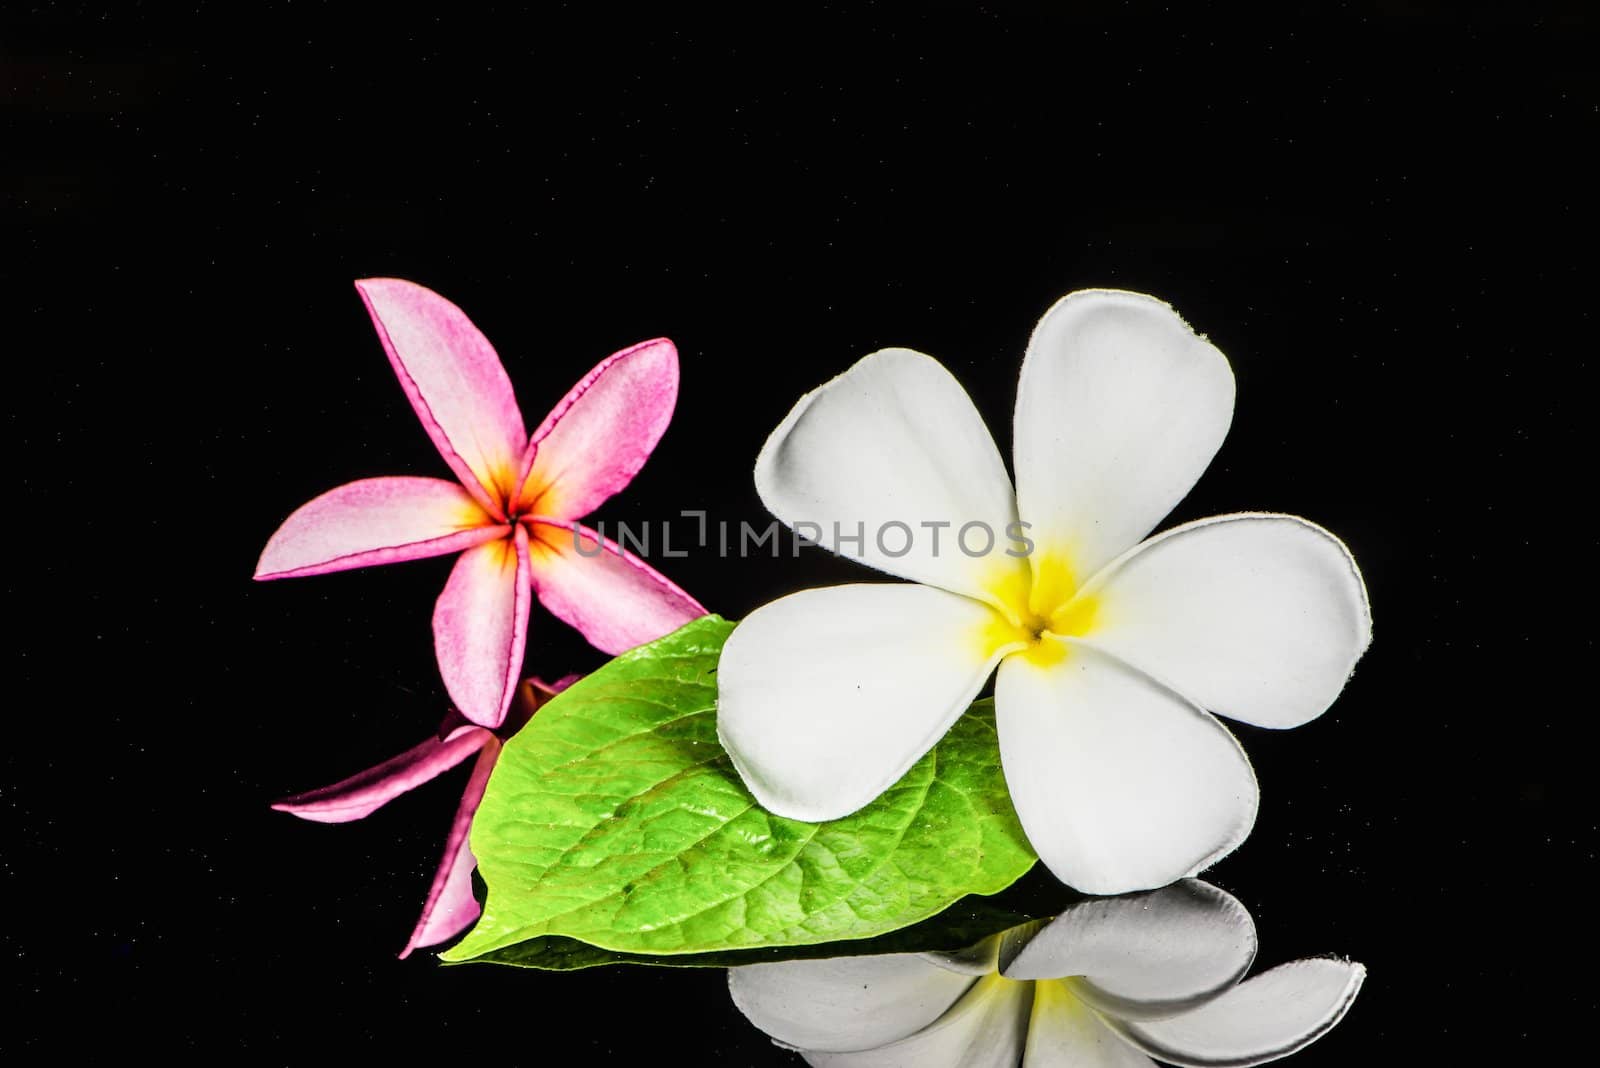 Frangipani flower by wmitrmatr